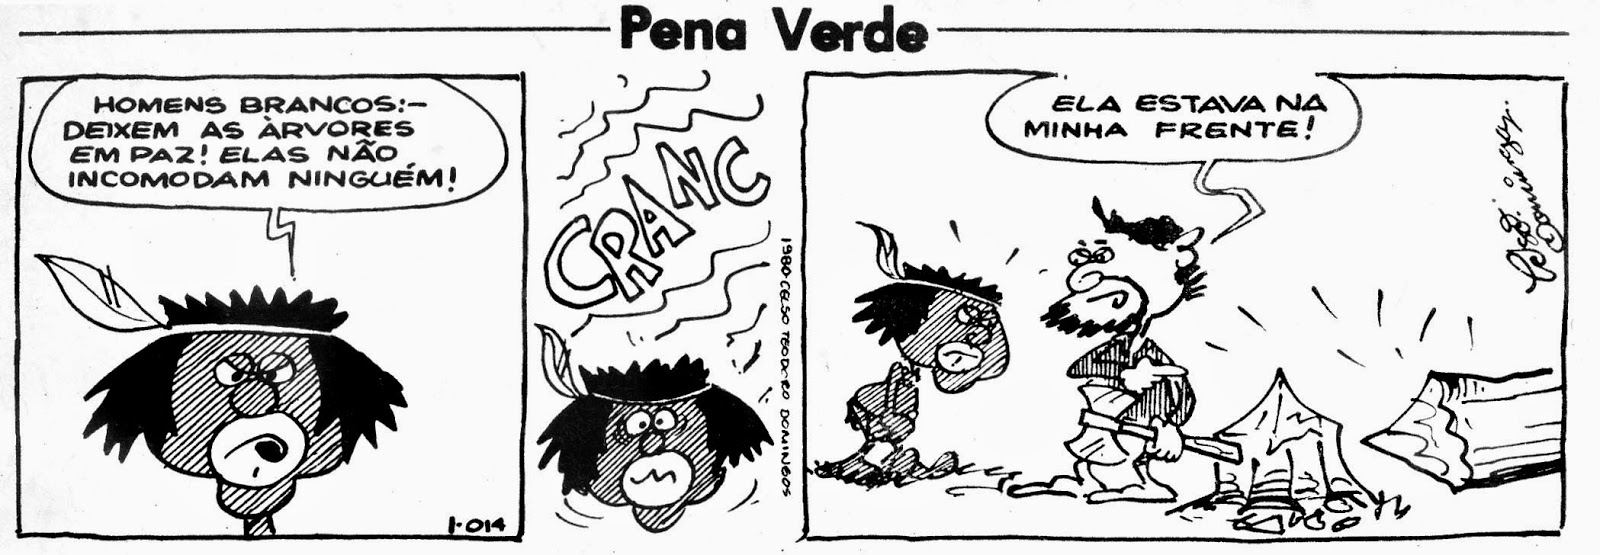 Pena Verde (1980)